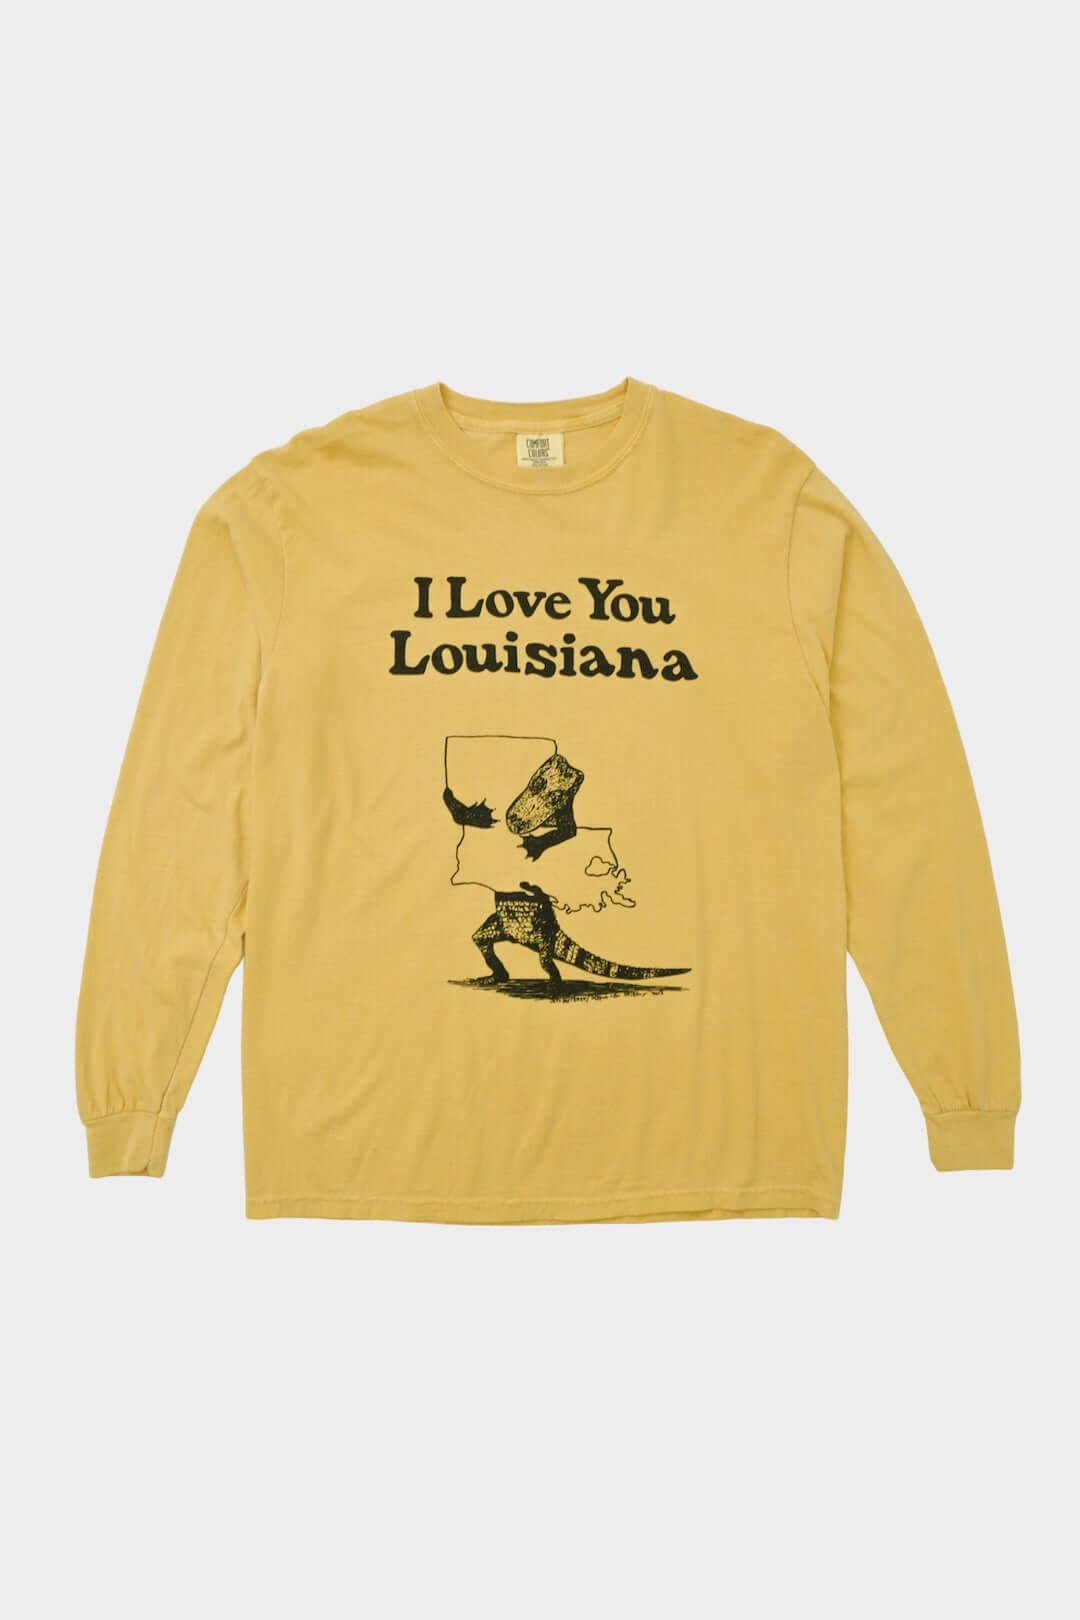 Someone In Alexandria Louisiana Loves Me Heart Skyline Long Sleeve T-Shirt